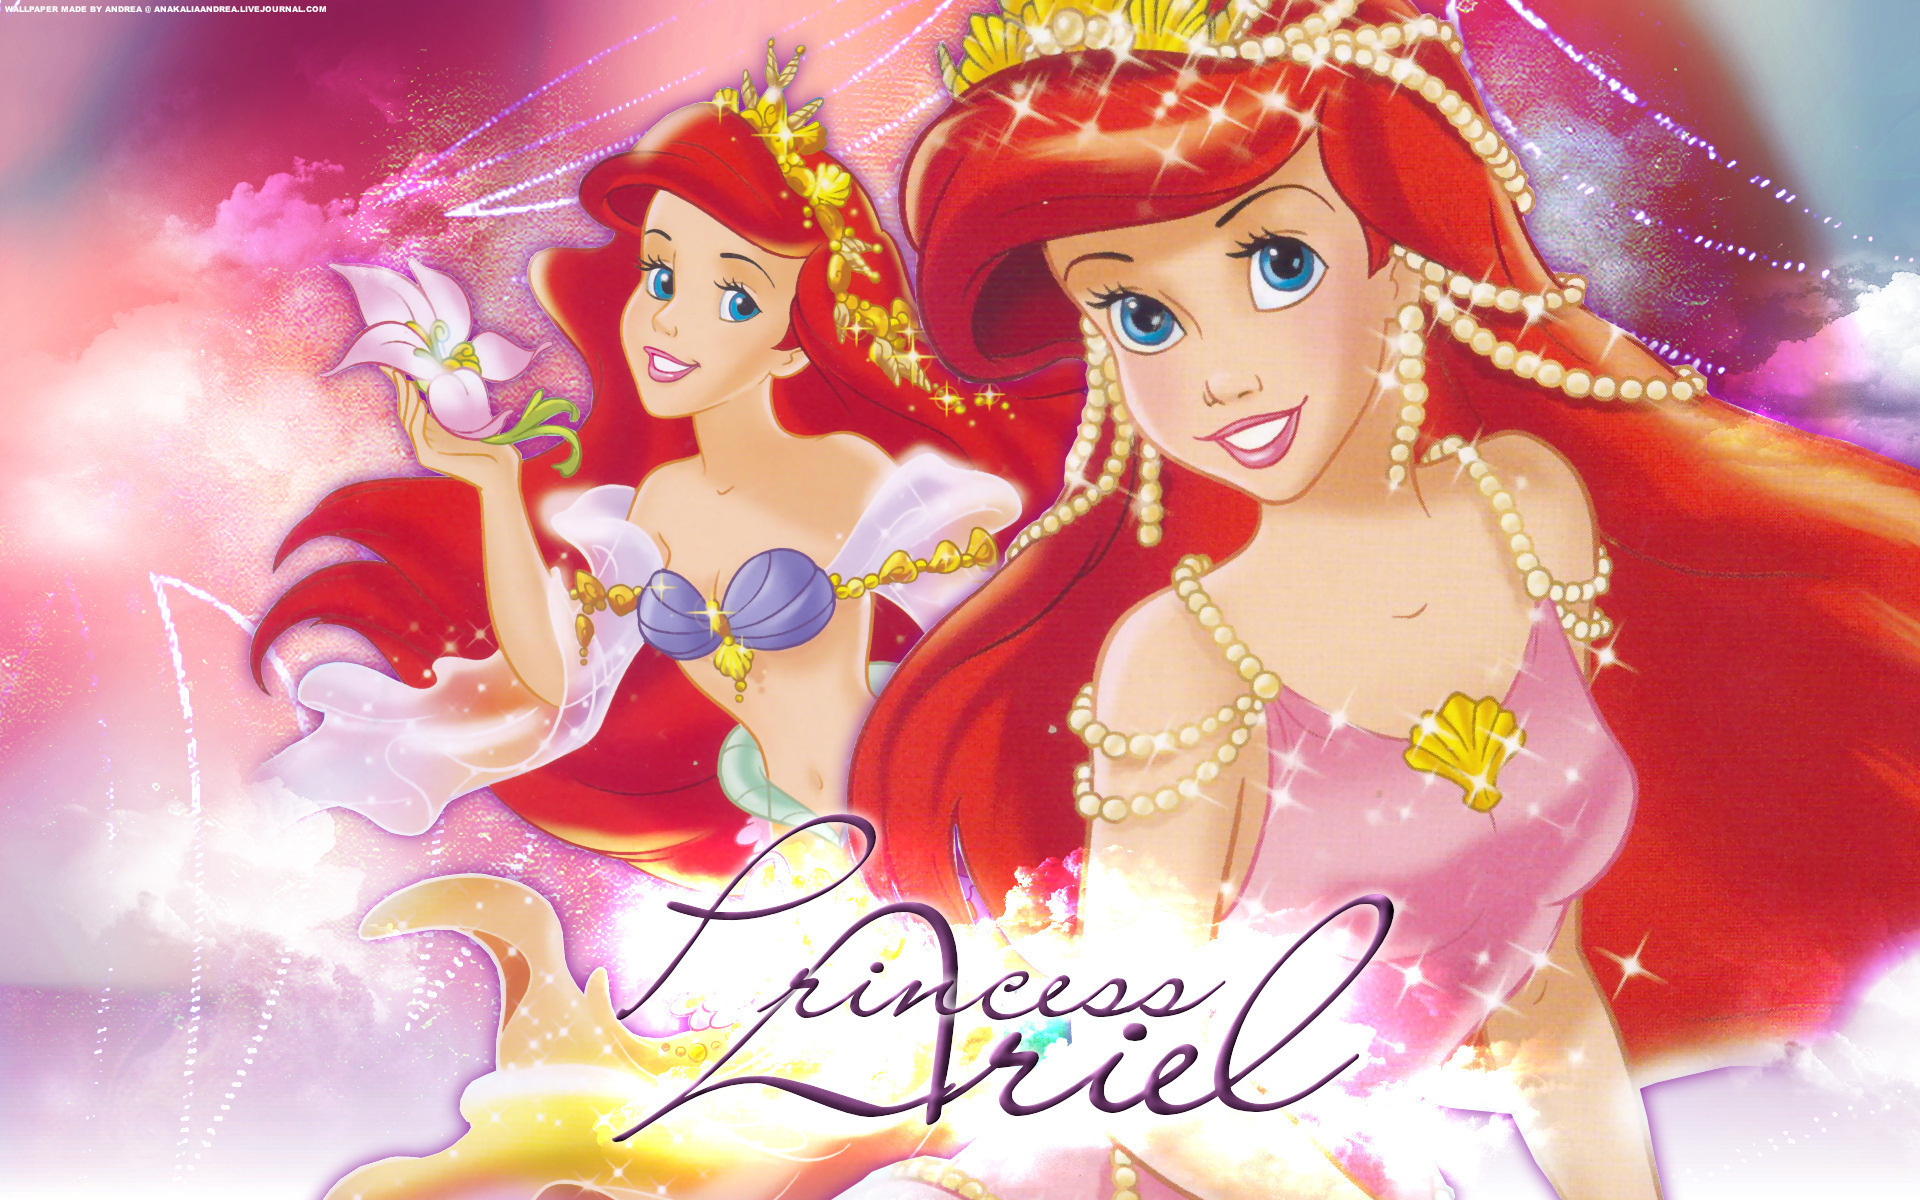 Disney Princess images Princess Ariel wallpaper photos 19826529